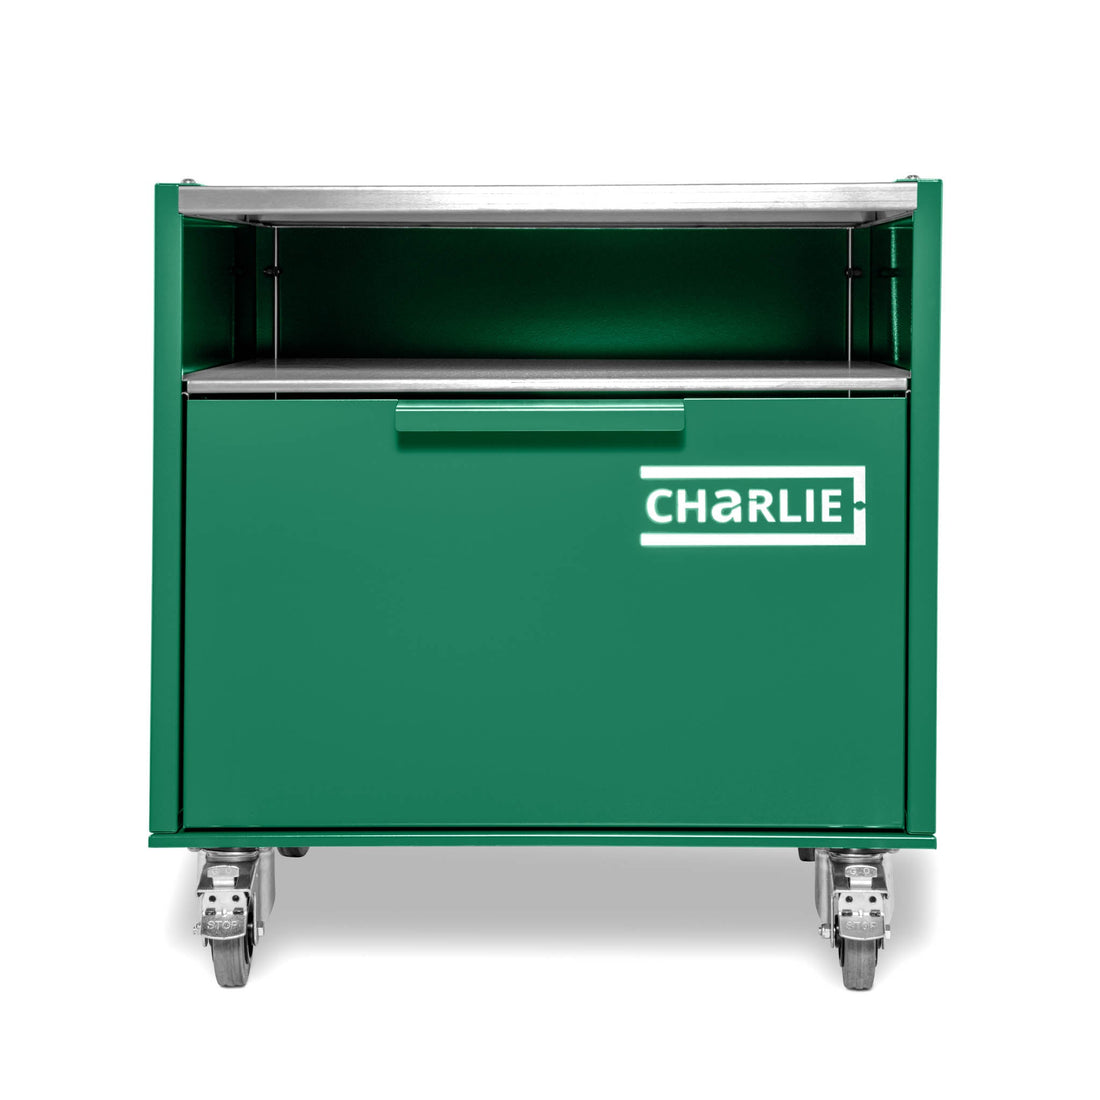 Charlie Base Cabinet - Oregano - Charlie Oven